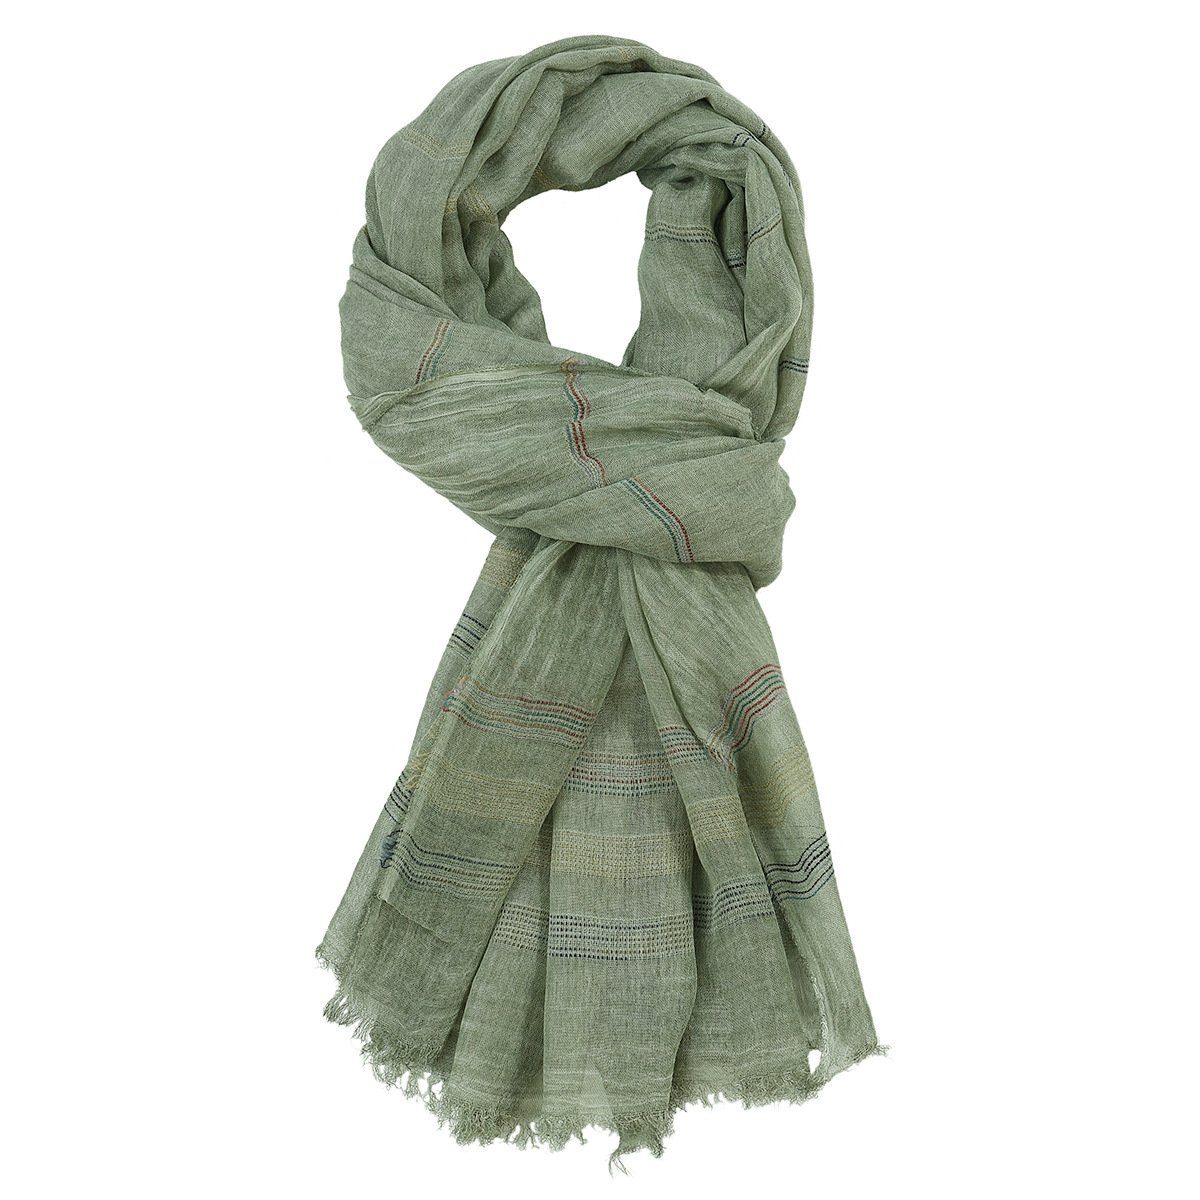 Solid und weiche grün Unisex Warme Stola Schal Reversible Modeschal GelldG Wrap Color